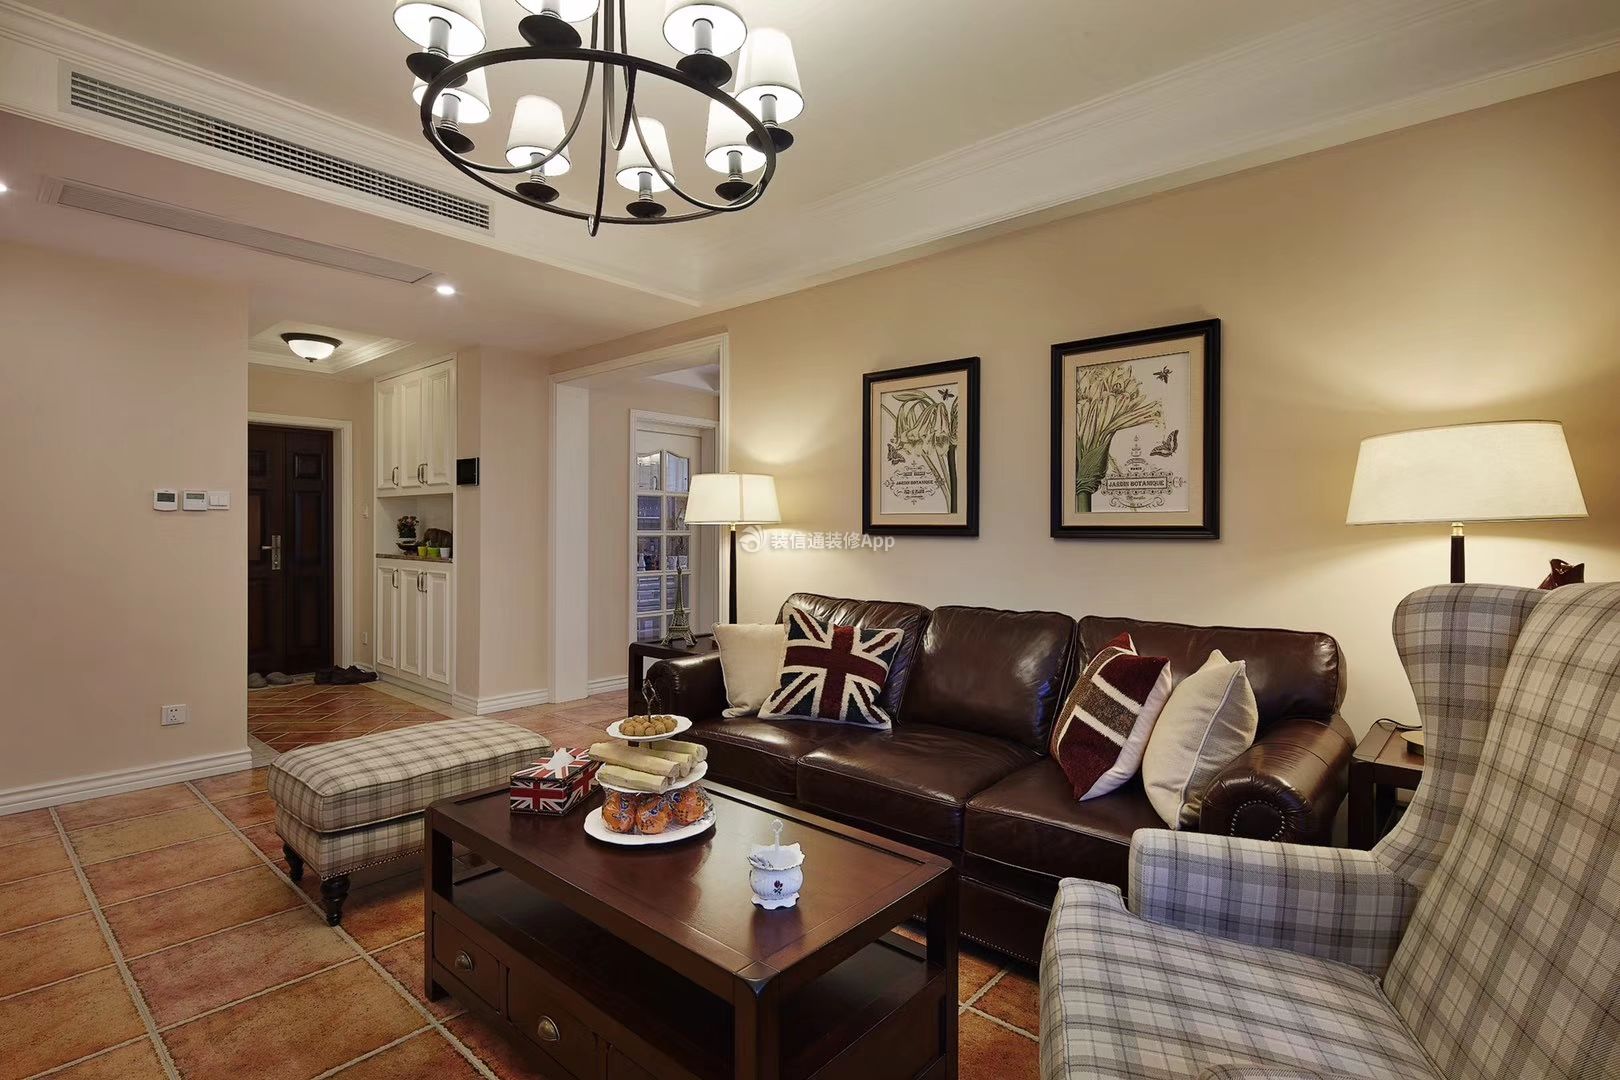  美式客厅装修 美式客厅装修实景图 美式沙发背景墙效果图